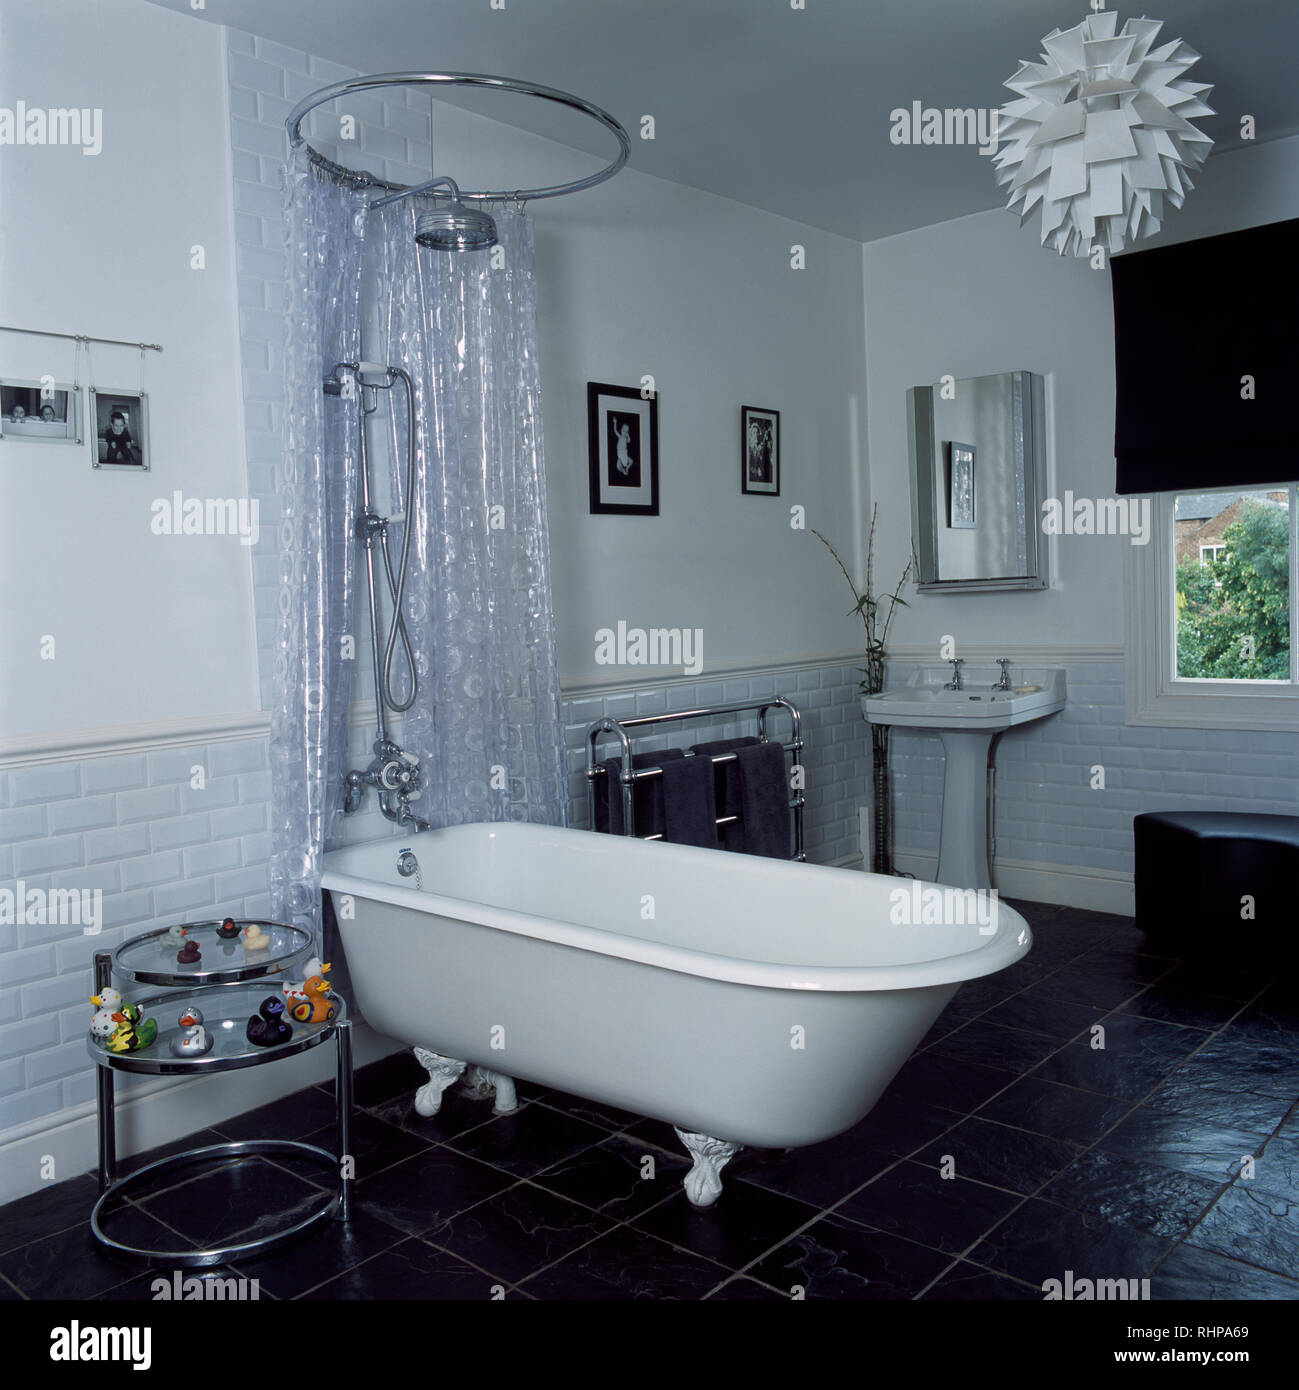 Aus klarem Kunststoff Duschvorhang über freistehende Badewanne  Stockfotografie - Alamy